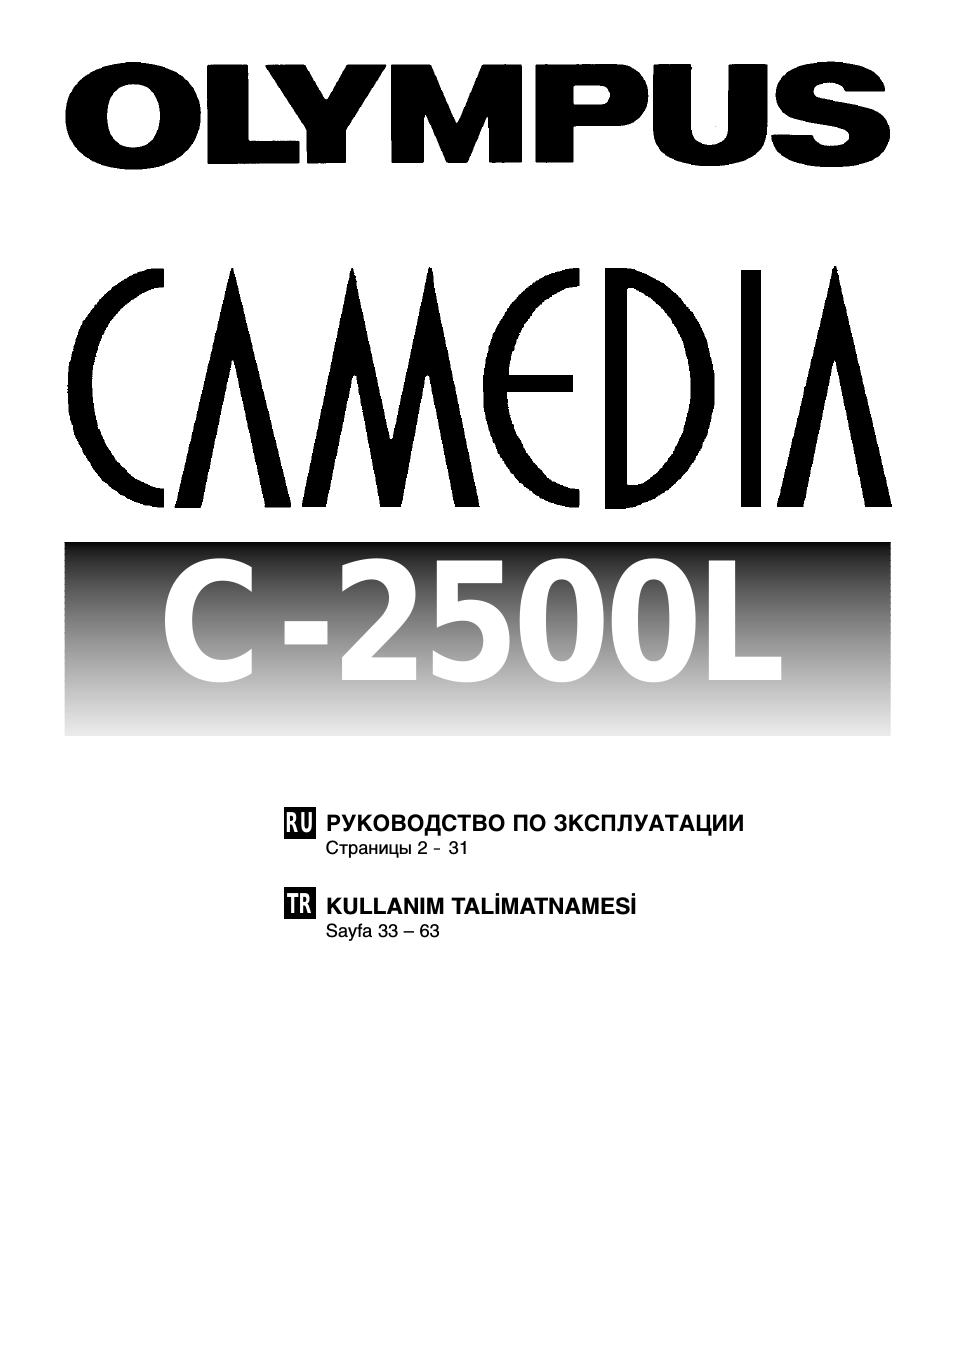 C-2500L